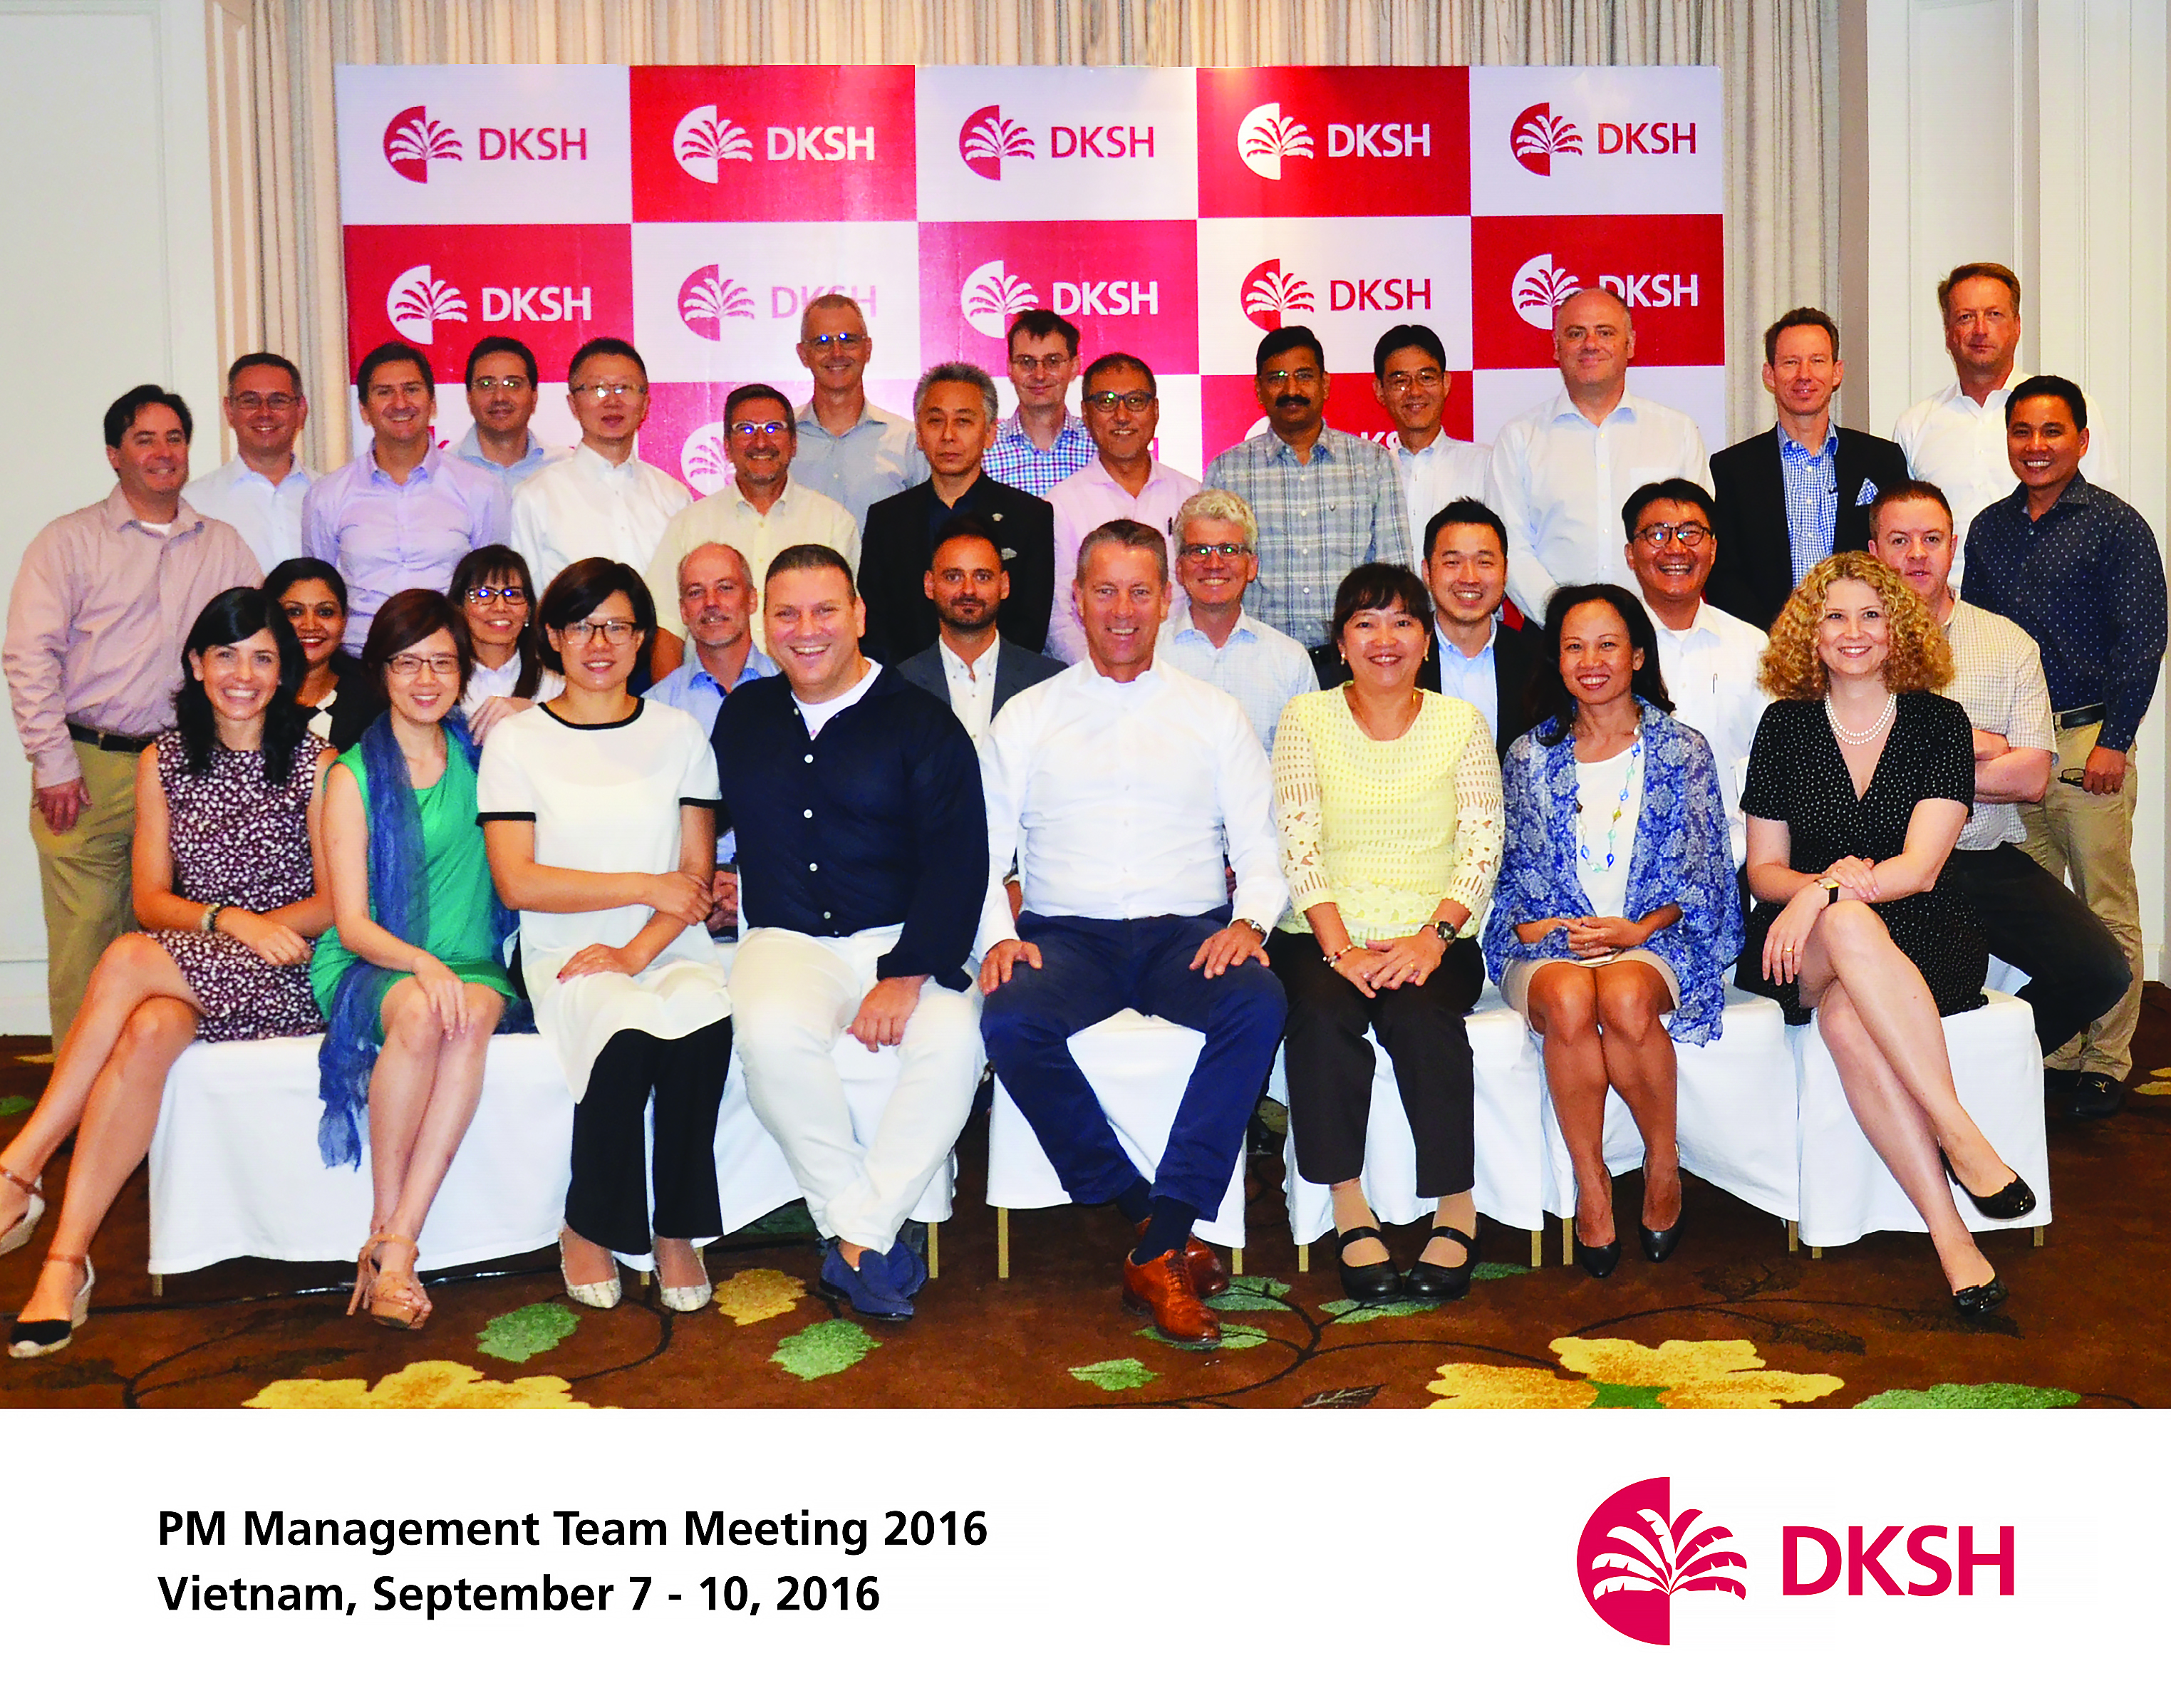 DKSH - Management Team Meeting 2016